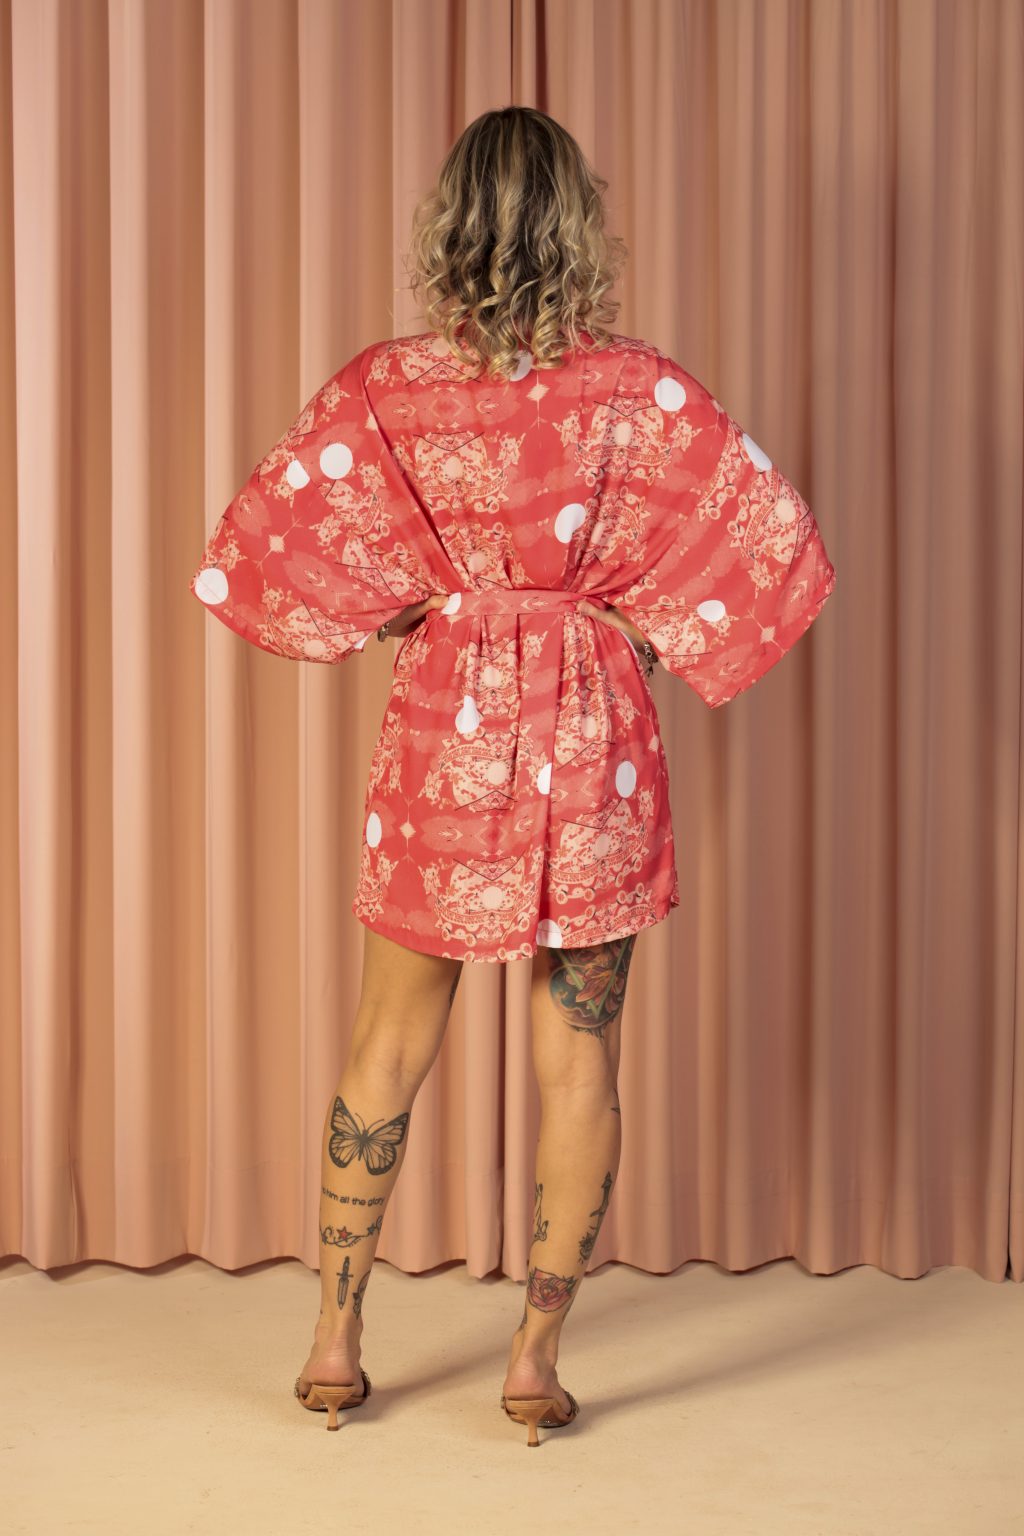 Mulher loira usando um kimono curto manga curta faixa para amarração na cintura estampa exclusiva terceira peça conforto praticidade elegância leveza maria sanz kimono